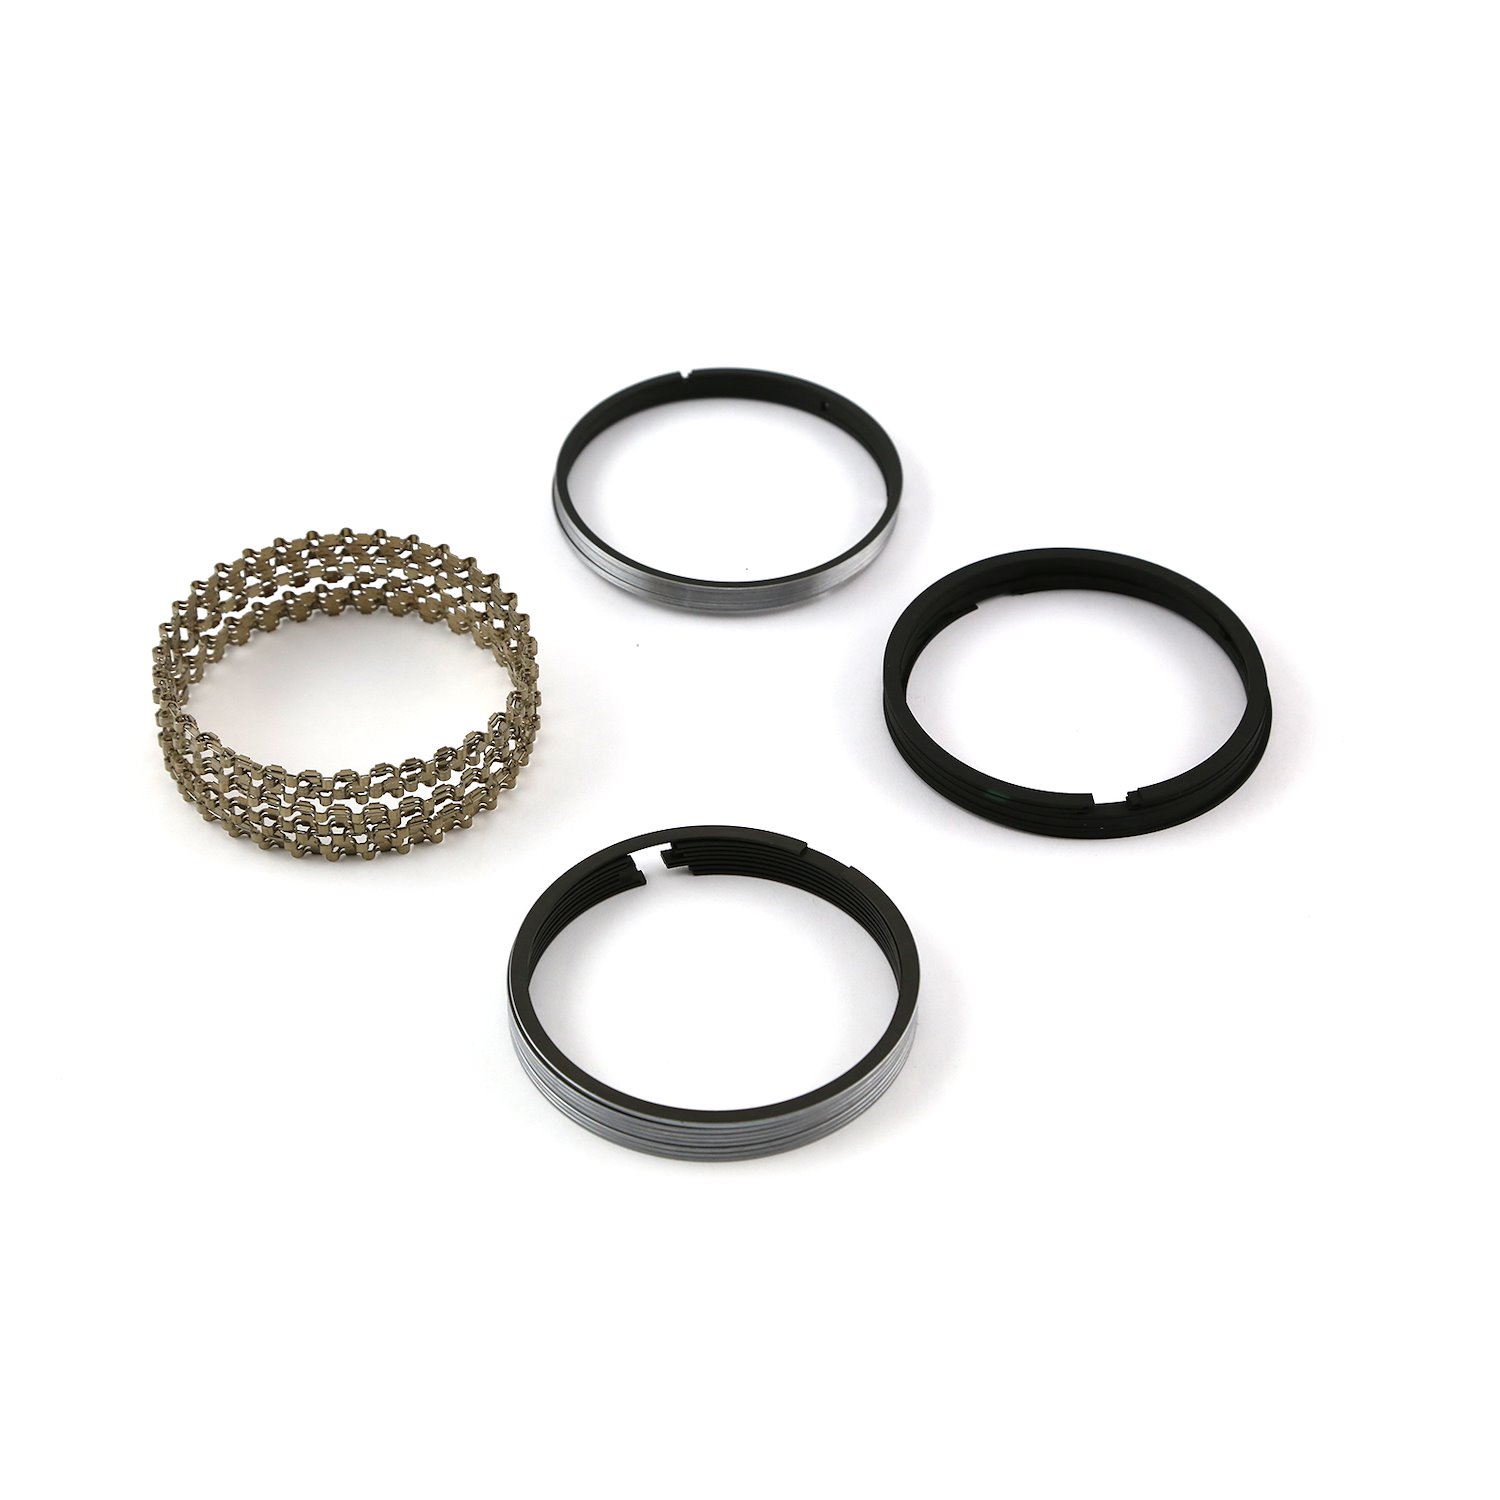 4.155 Bore - 1/16 - 1/16 - 3/16 Plasma Moly Piston Ring Set - Zero Gap